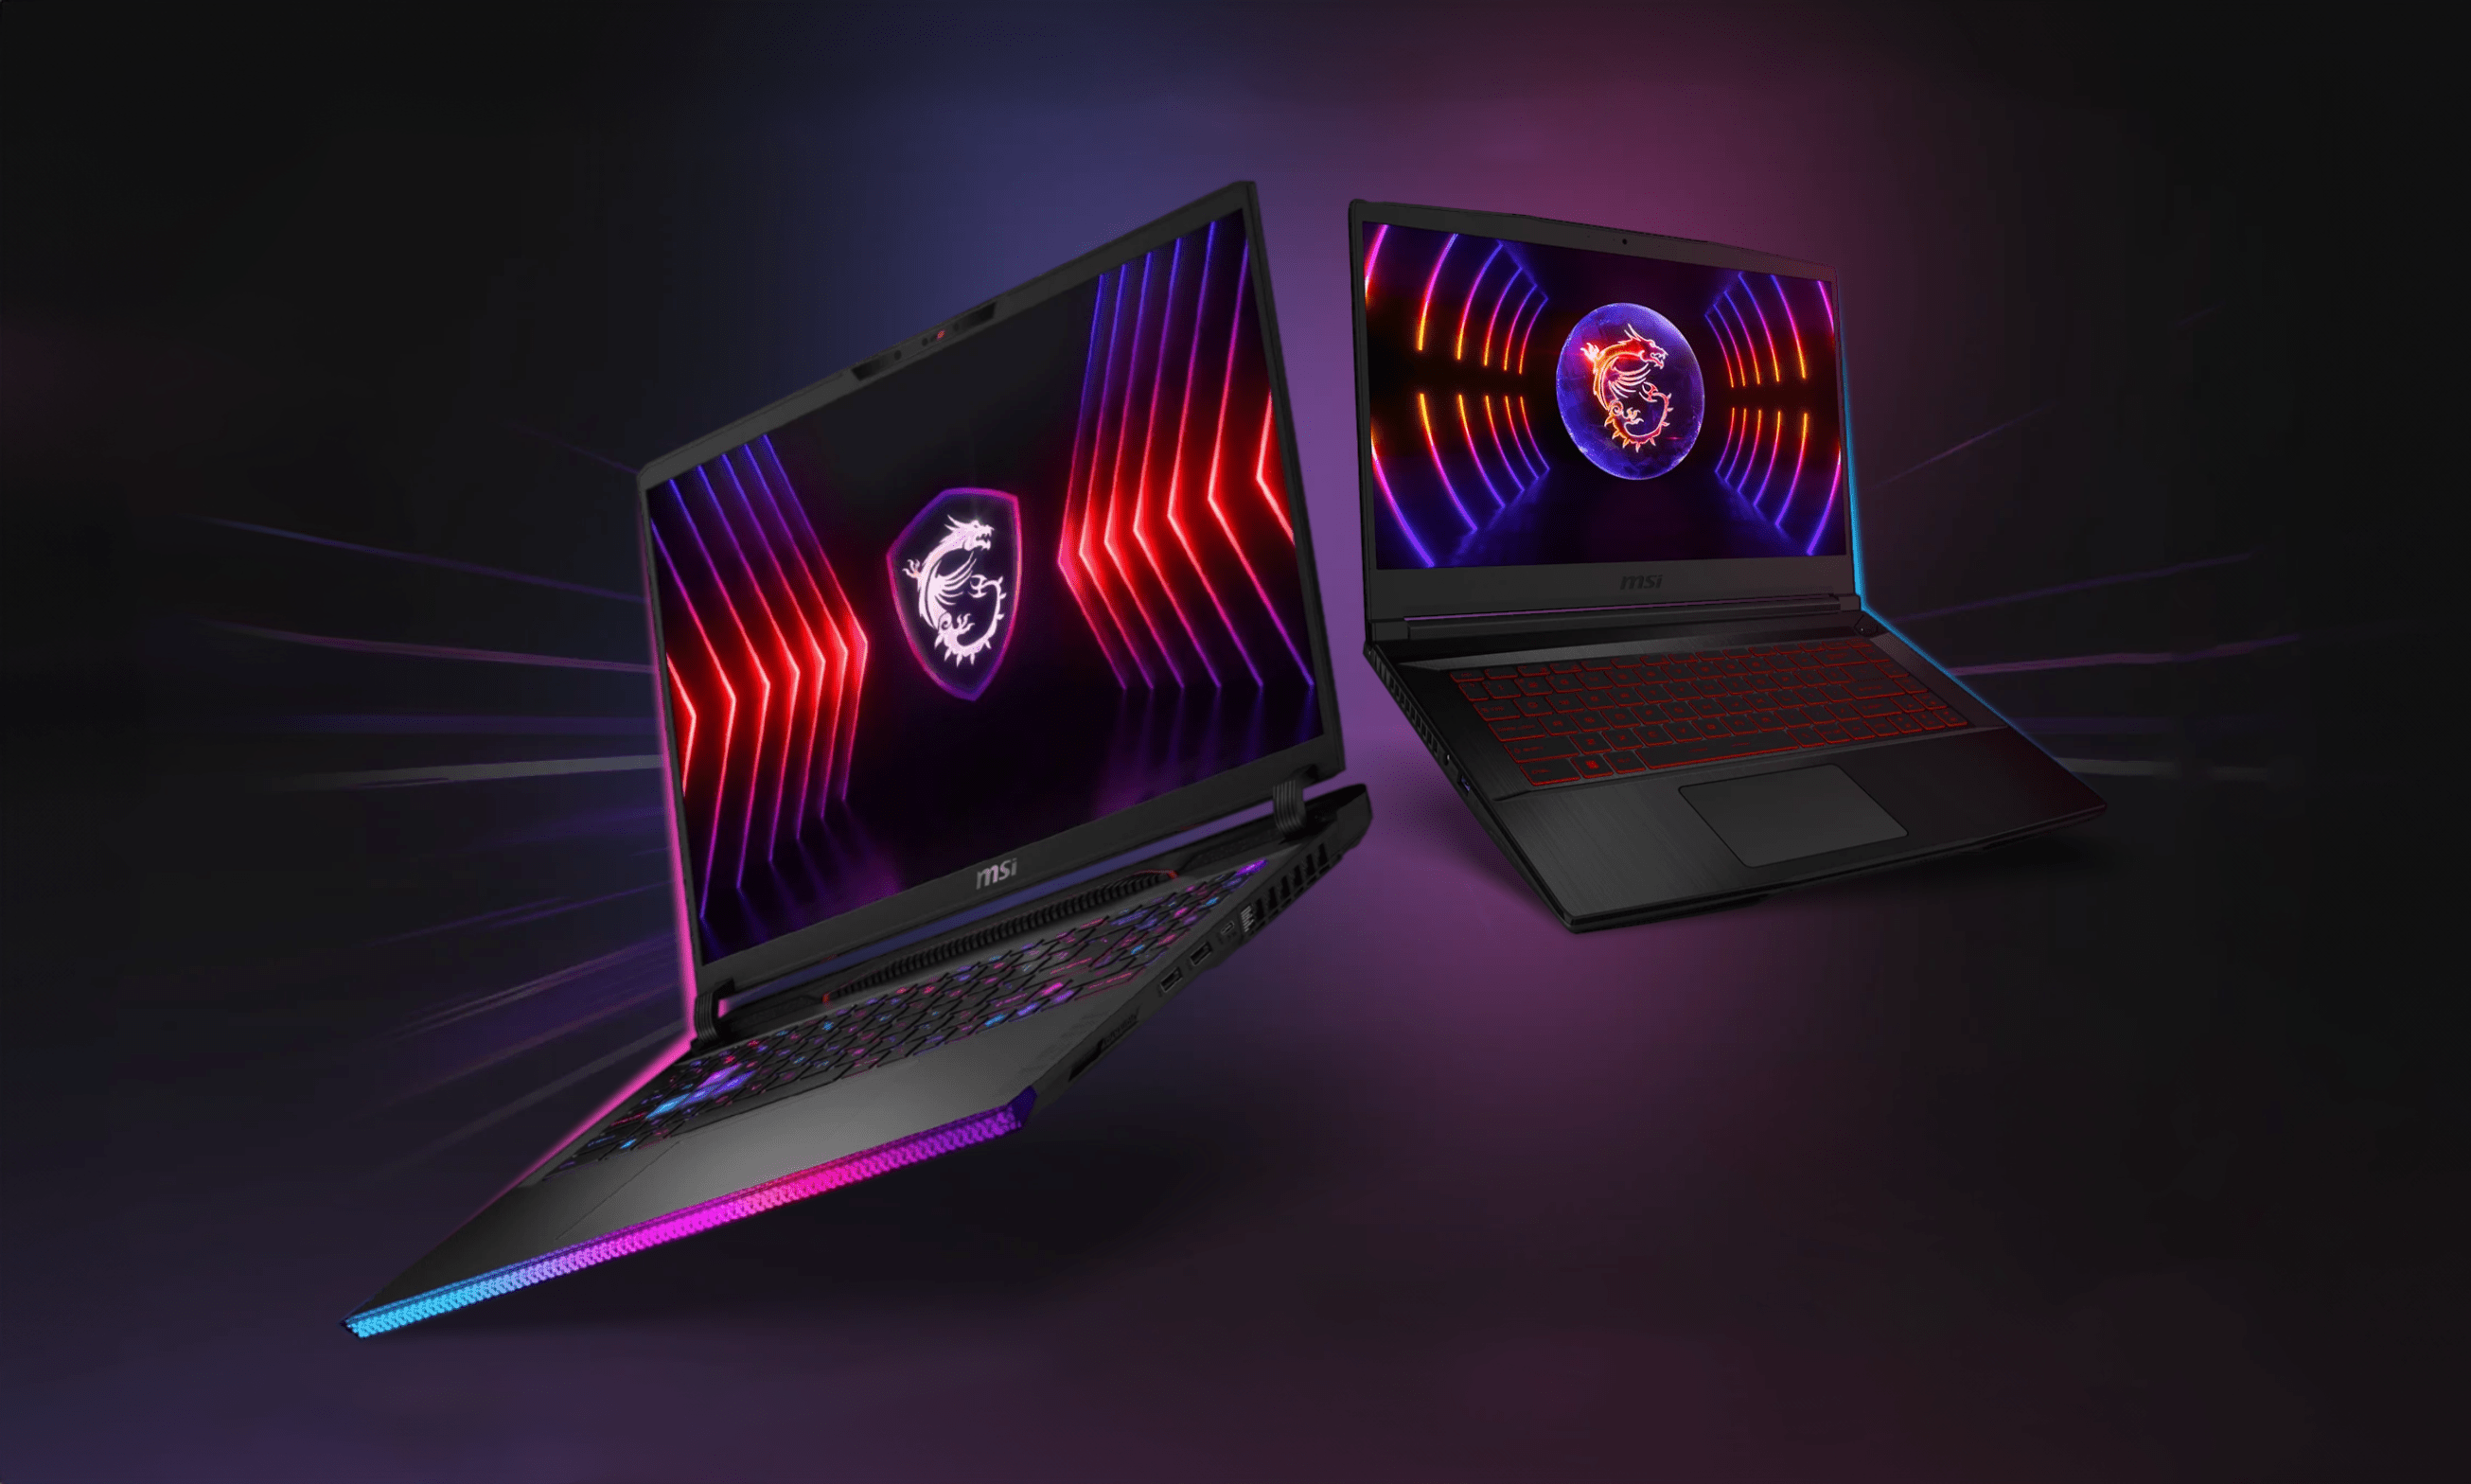 Dwa gamingowe laptopy MSI z podświetleniem RGB na tle o ciemnofioletowym oświetleniu.